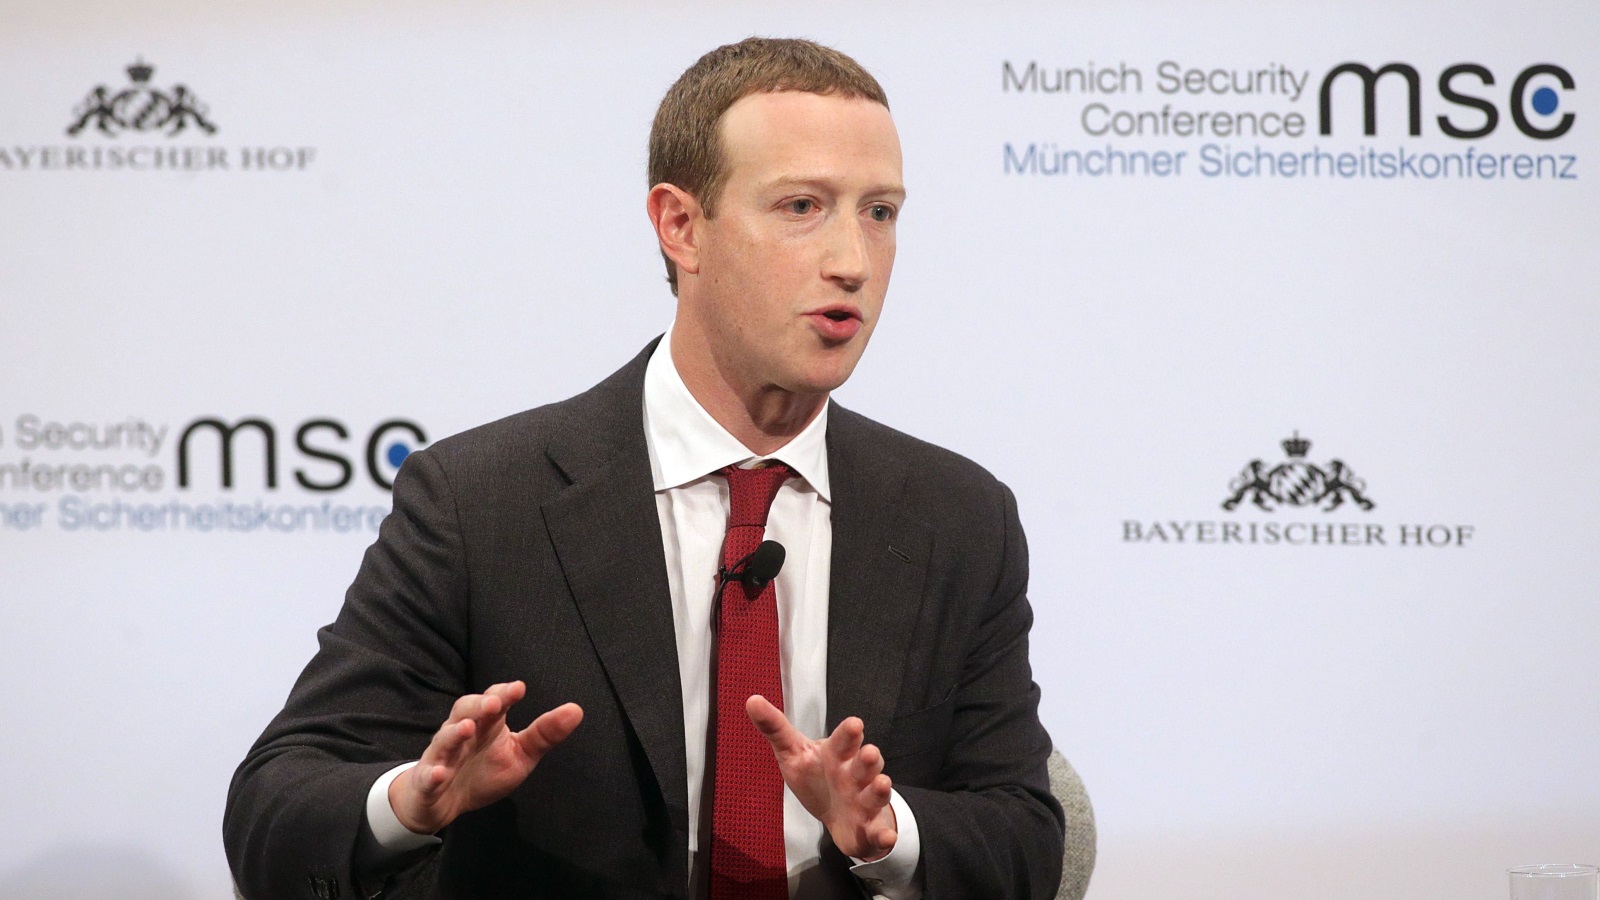 زوكربيرغ قال في وقت سابق إن فيسبوك  تسعى إلى أتمتة عملية الإشراف على المحتوى (غيتي)